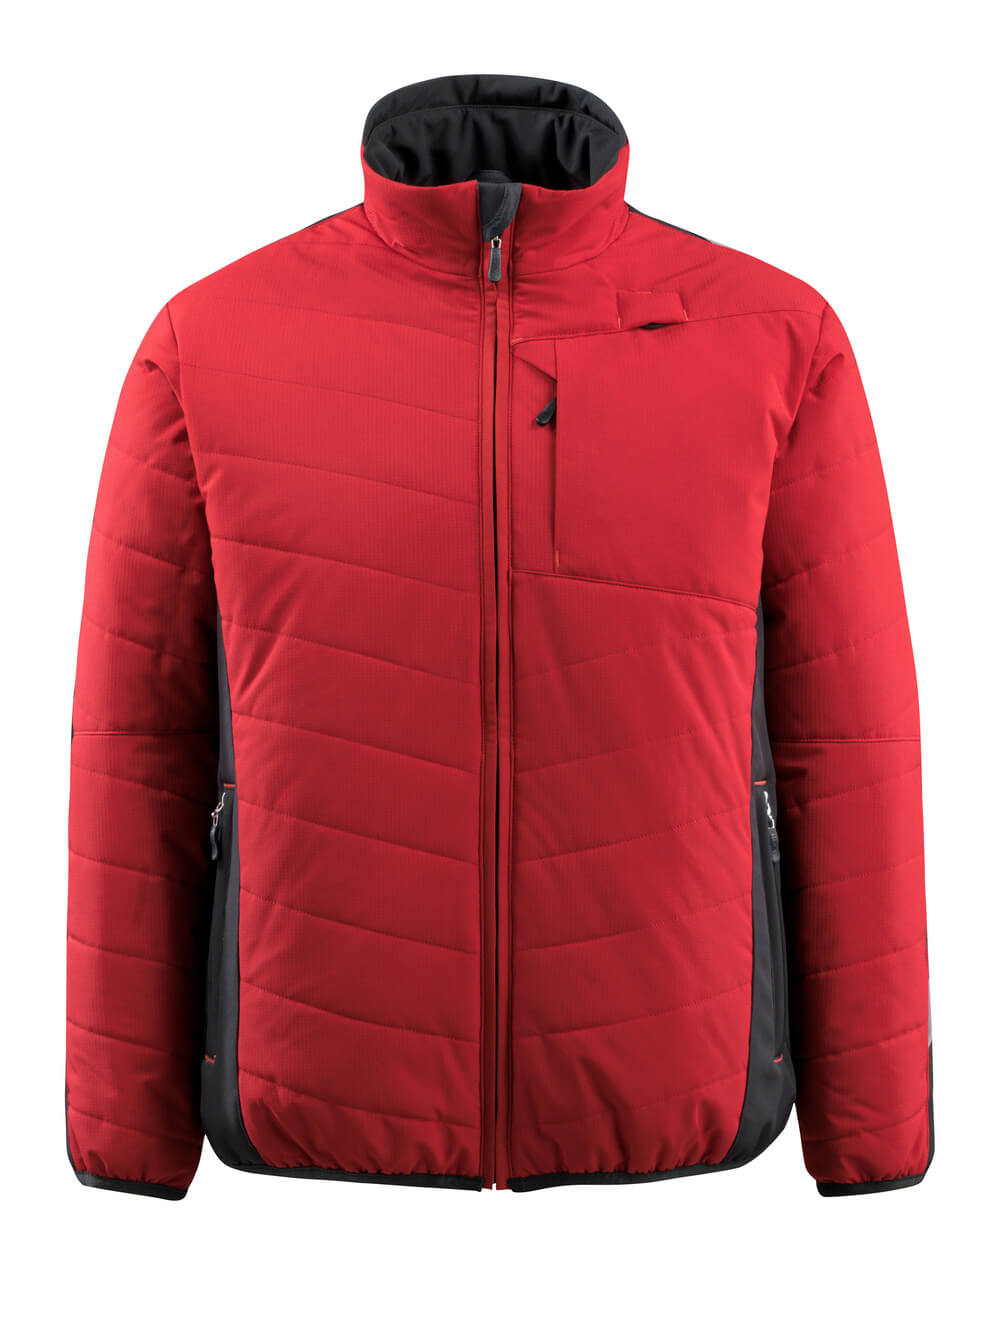 15615-249-0209 Thermal jacket - red/black